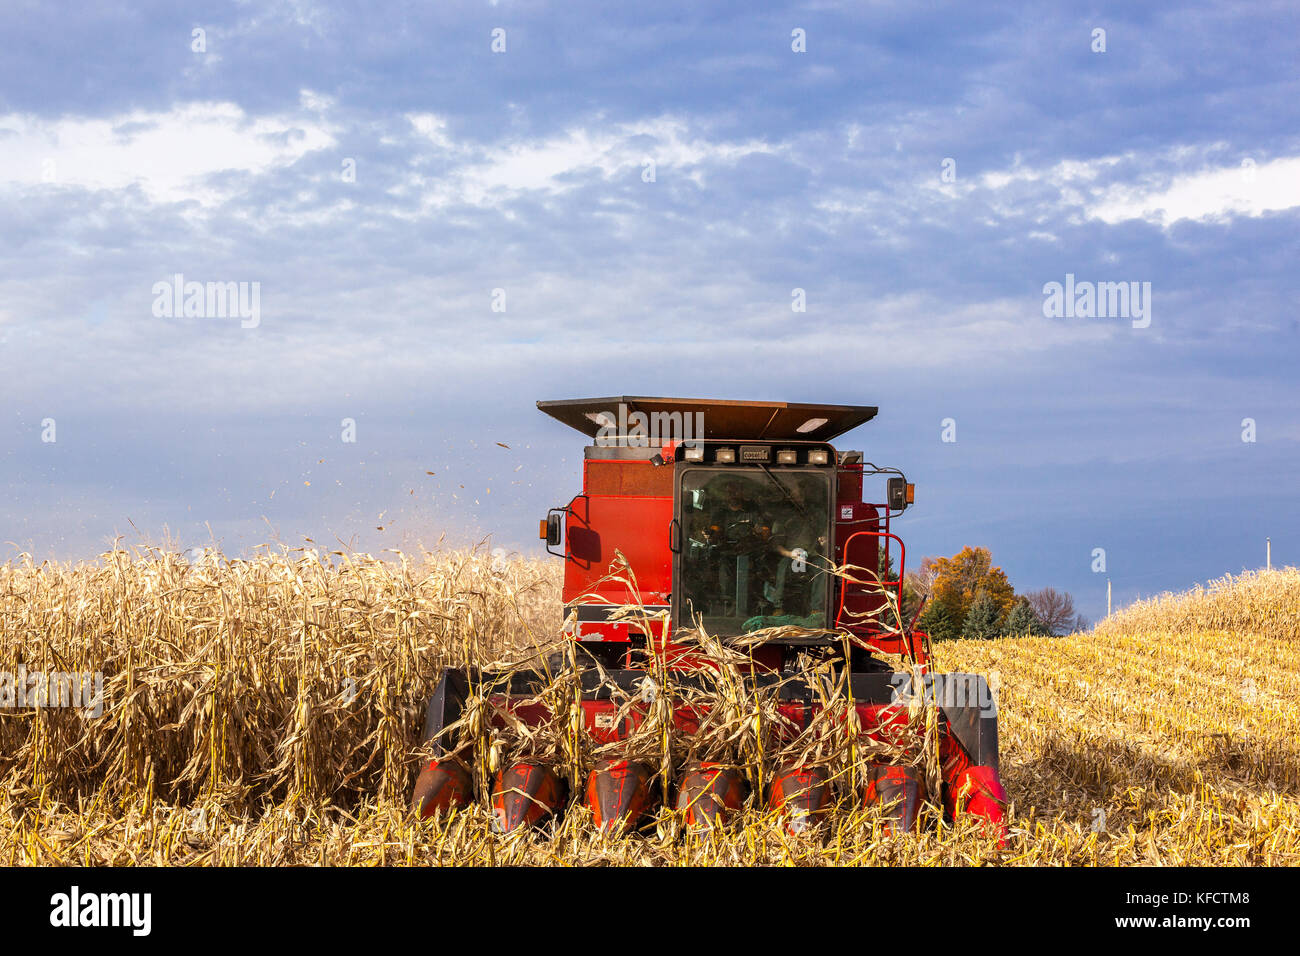 Case IH Mähdrescher aus der Maisstängel während der Ernte Feld Mais mit einem dramatischen Himmel. Stockfoto